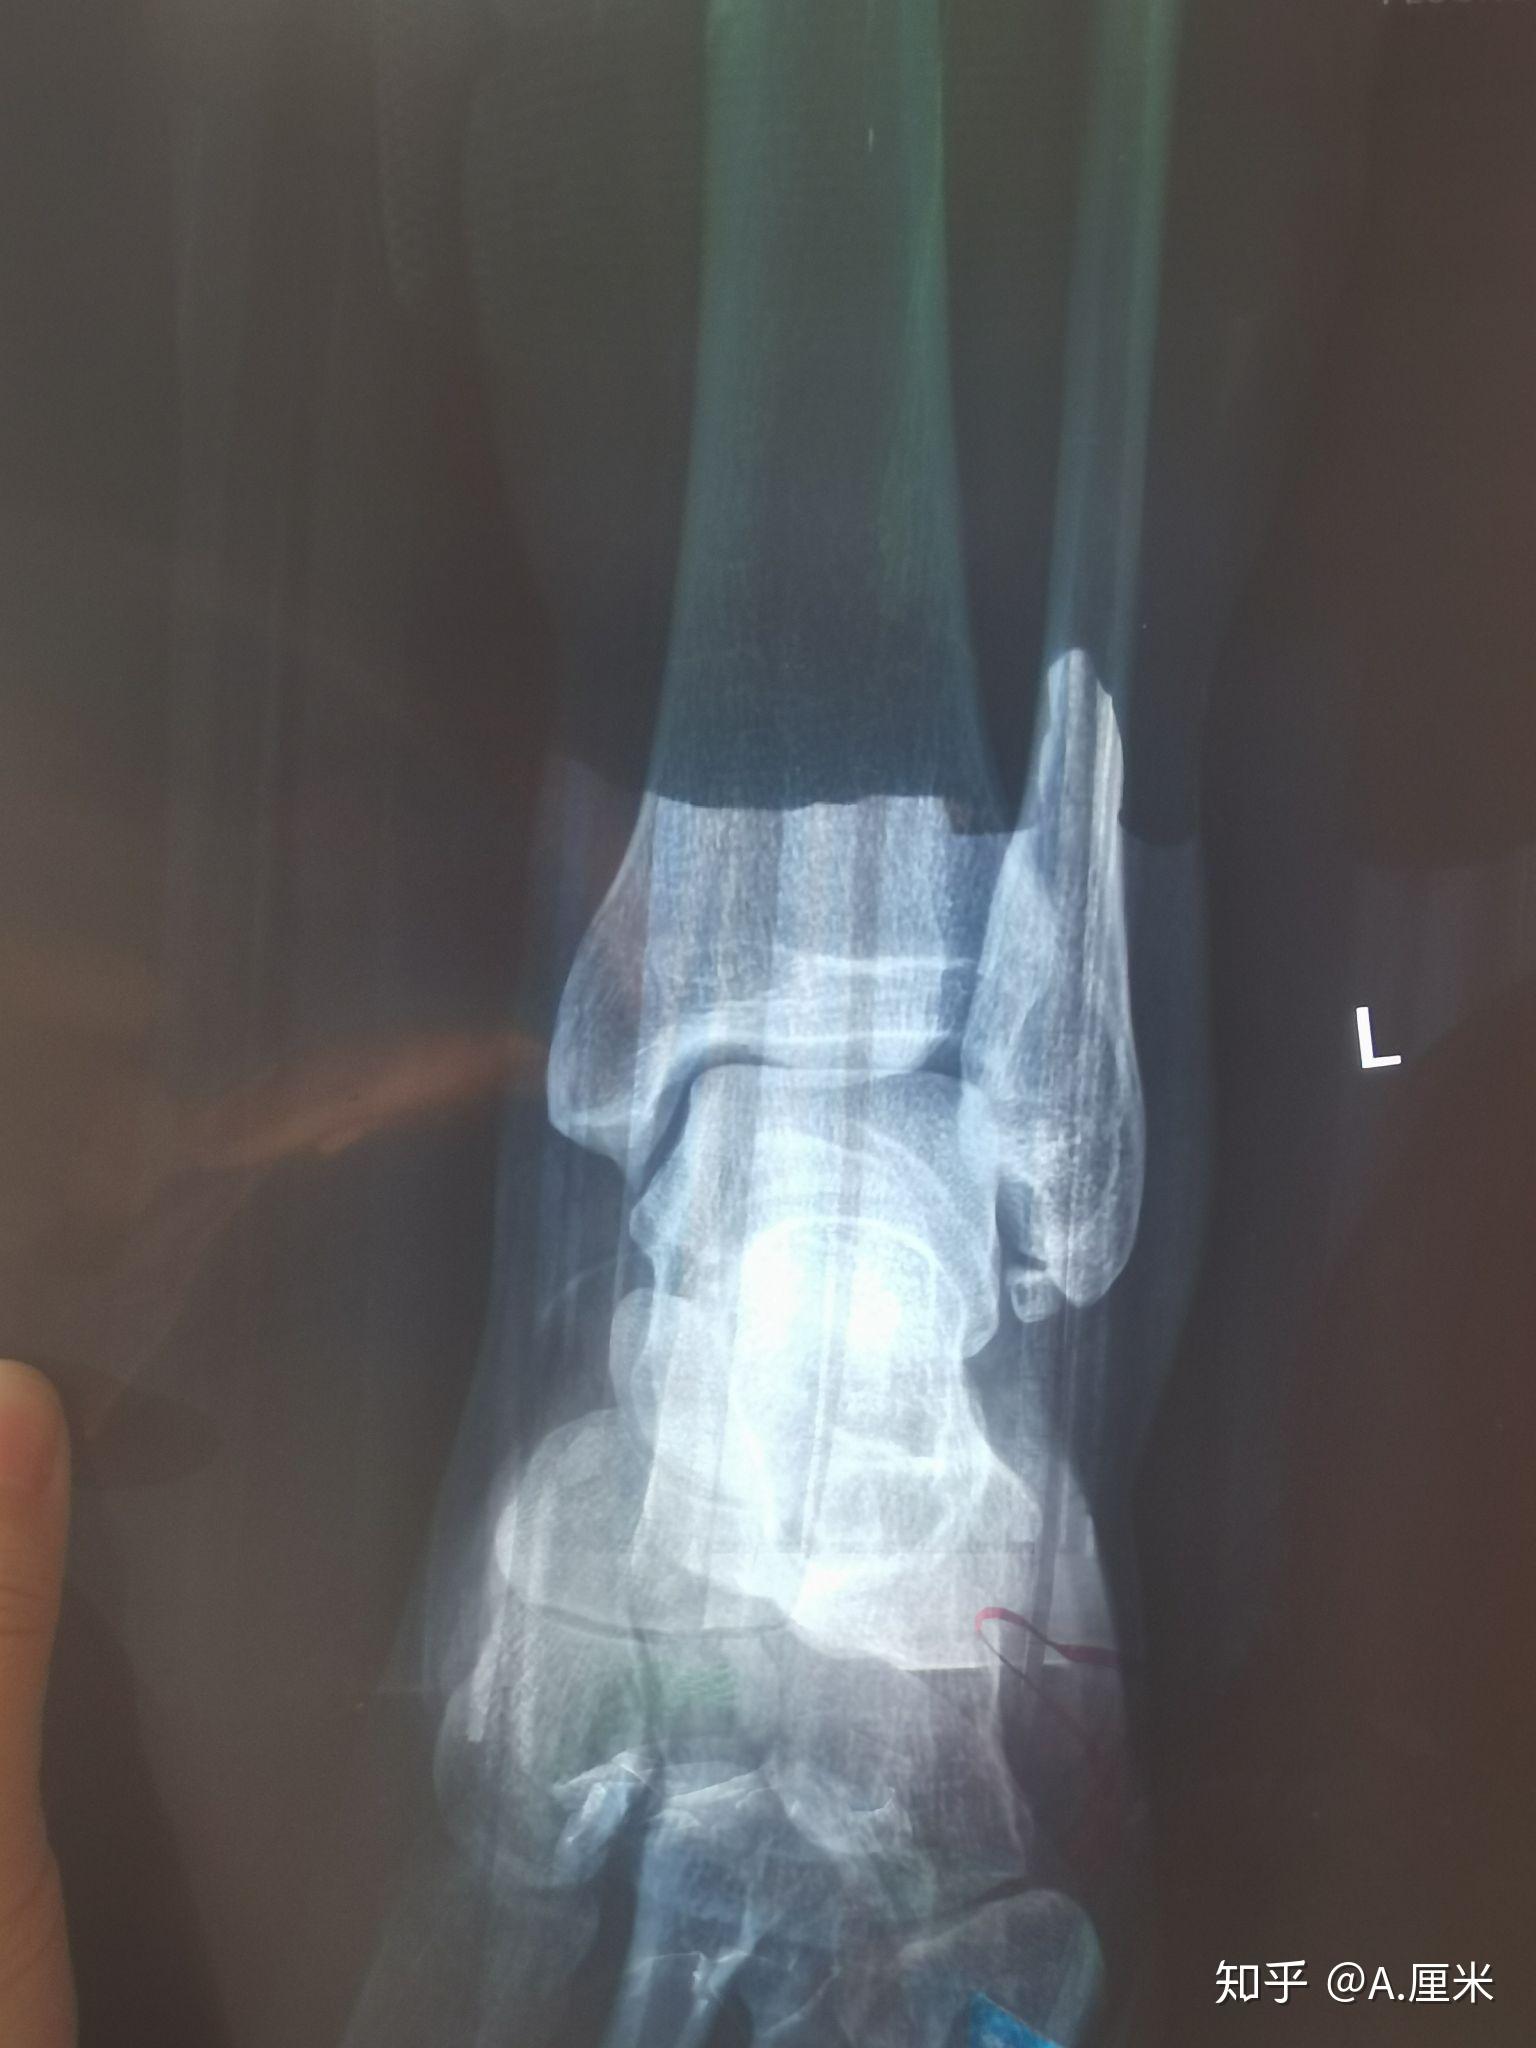 左脚外踝撕脱骨折加外侧副韧带断裂,之一保守治疗之路